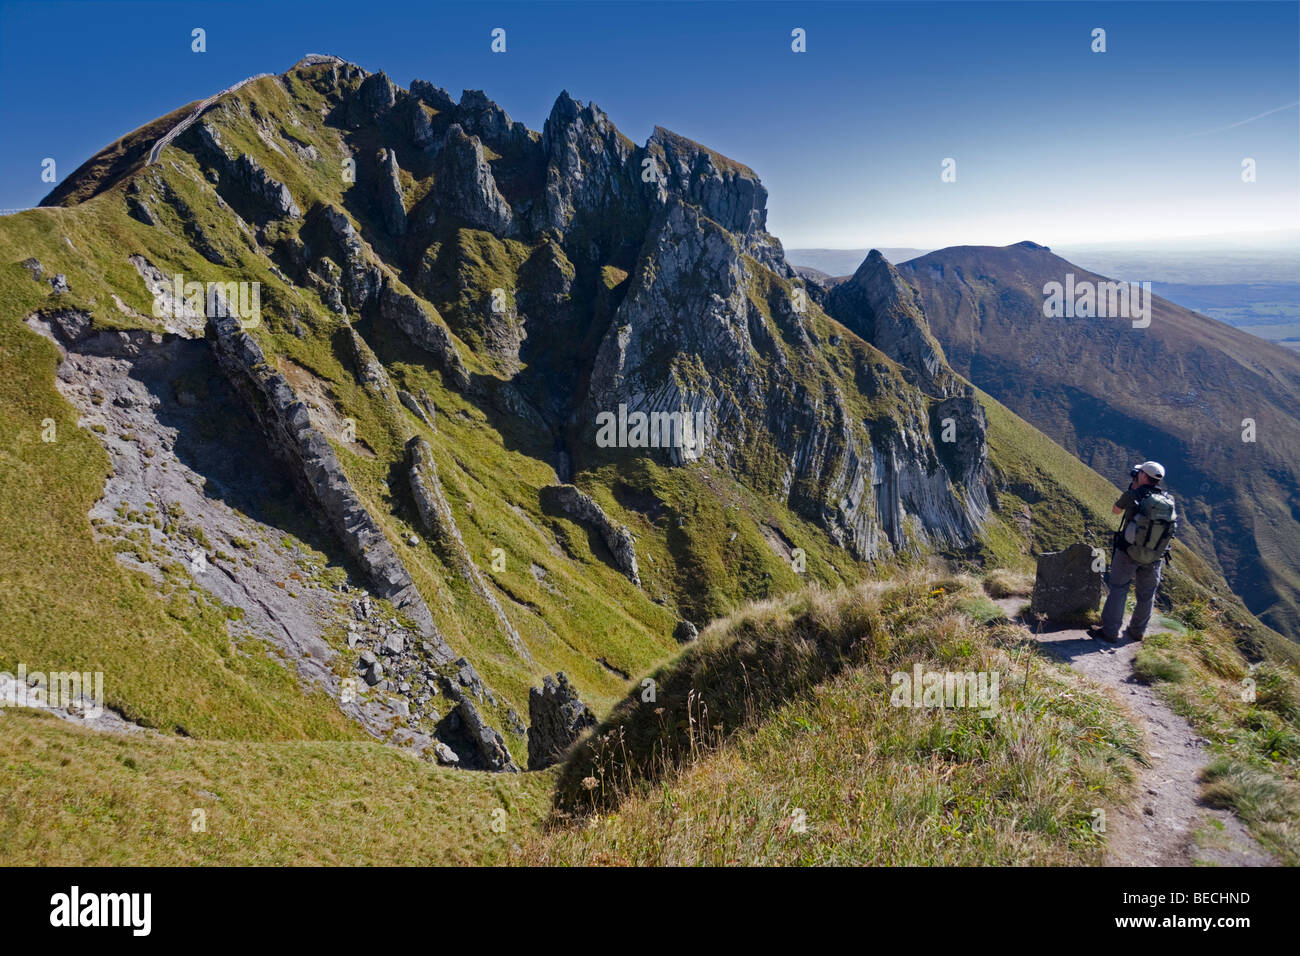 A hiker photographing the 'Puy de Sancy' top. Randonneur photographiant le sommet du Puy de Sancy. Stock Photo